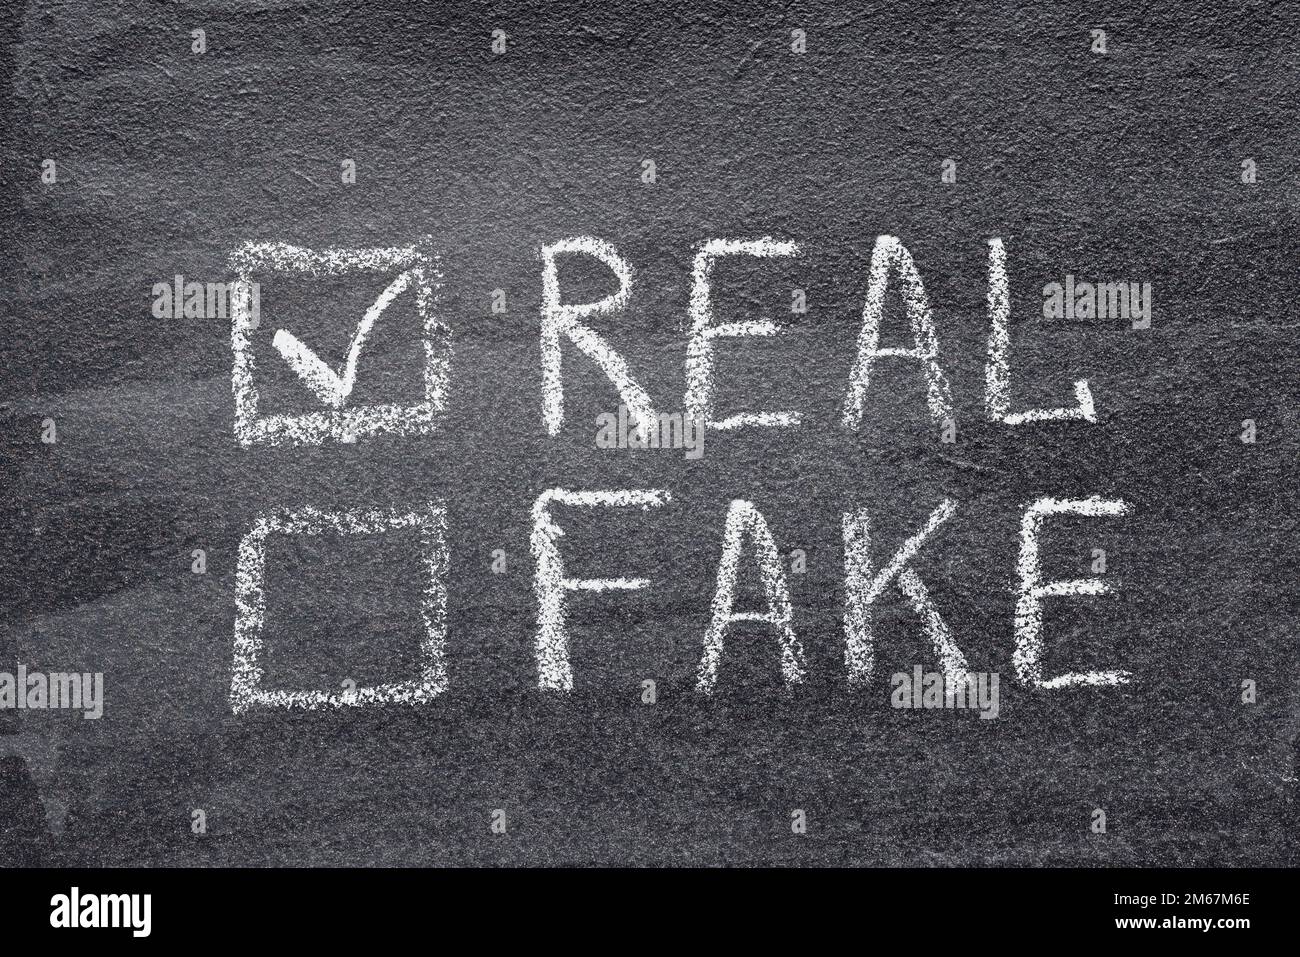 Reale oder falsche Kontrollkästchen auf dem Schwarzen Brett, das Wort "real" ist markiert Stockfoto